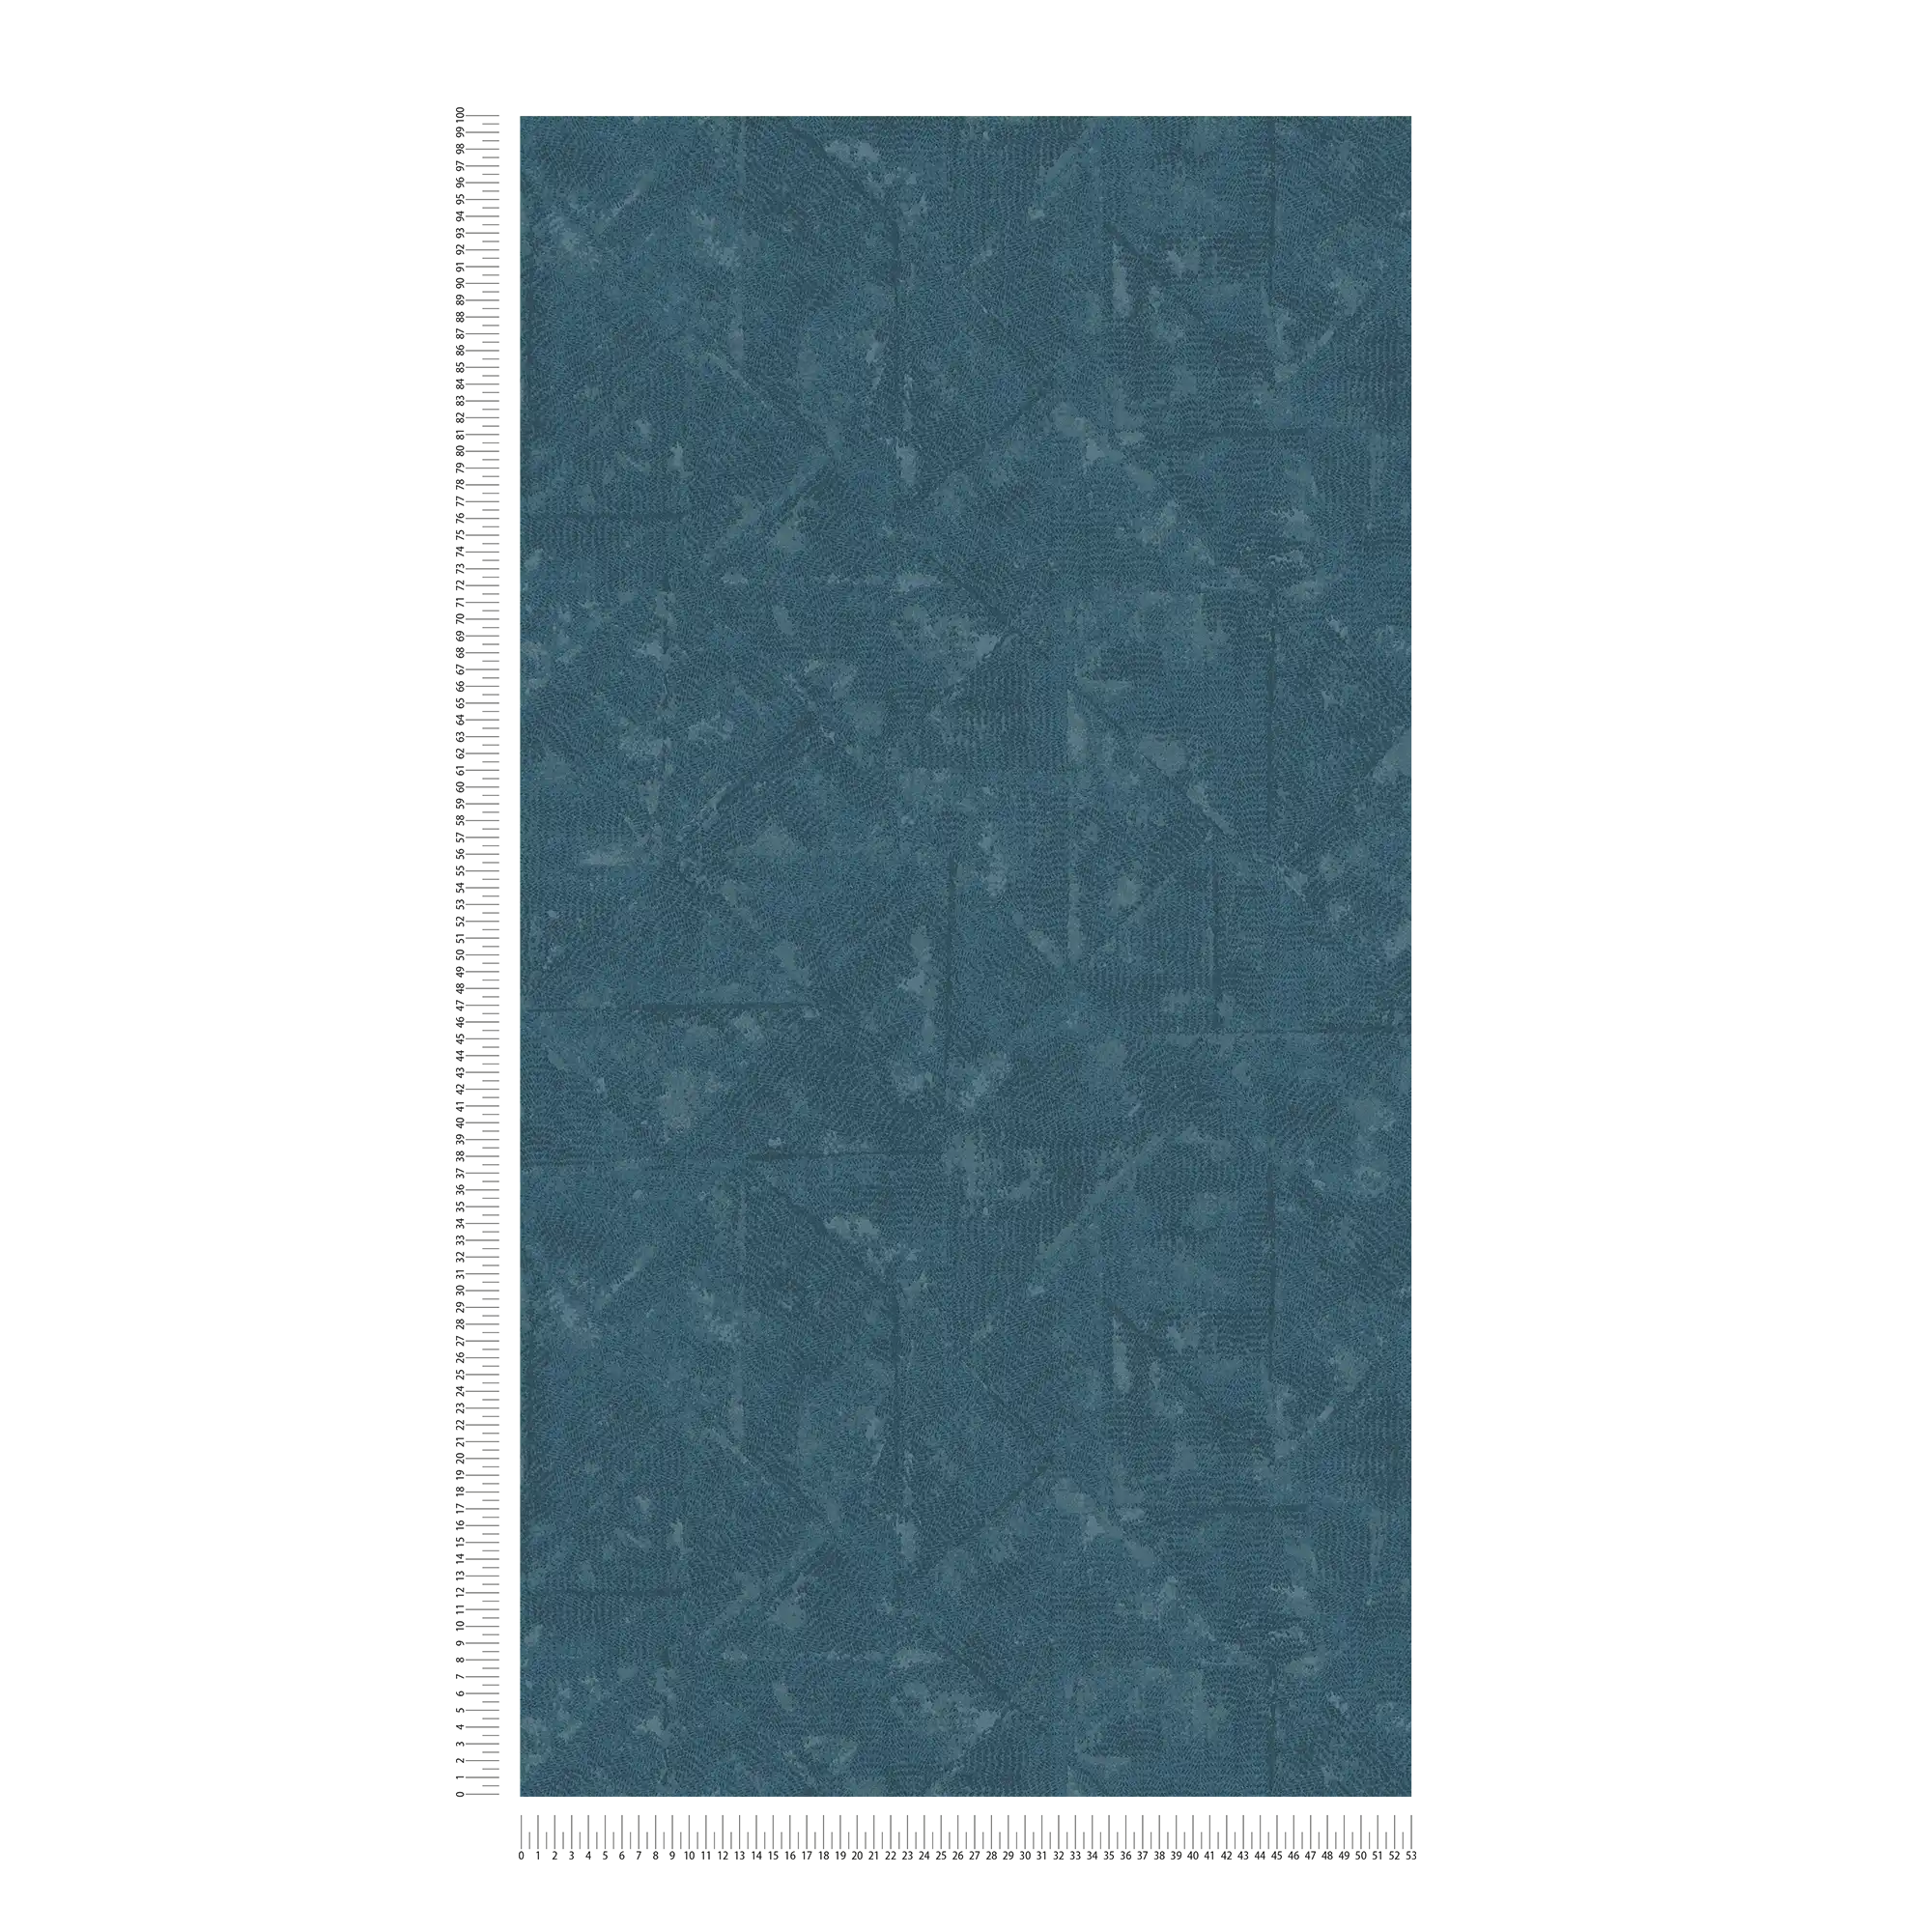             Carta da parati in tessuto non tessuto Petrol con dettagli asimmetrici - blu, grigio
        